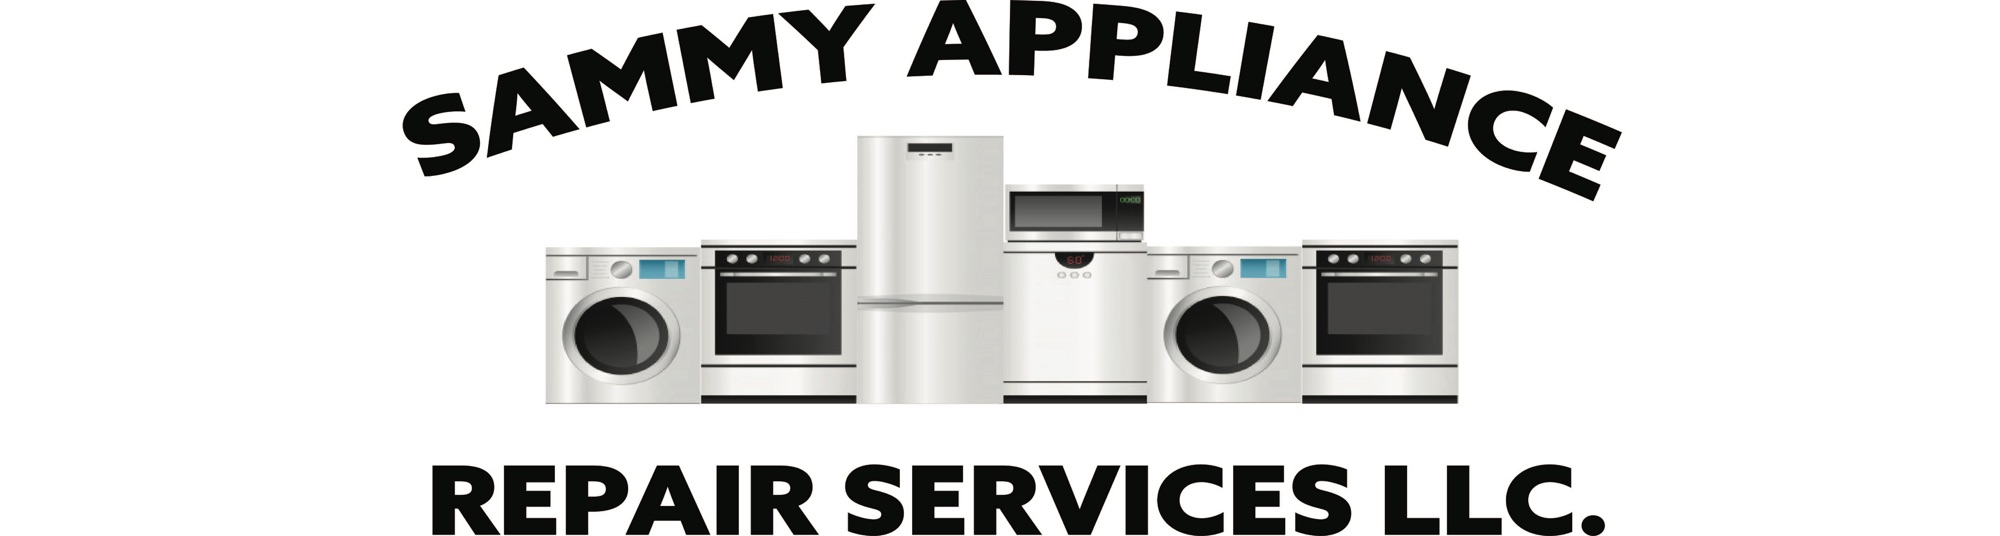 Sammy Appliances Repair Services Logo